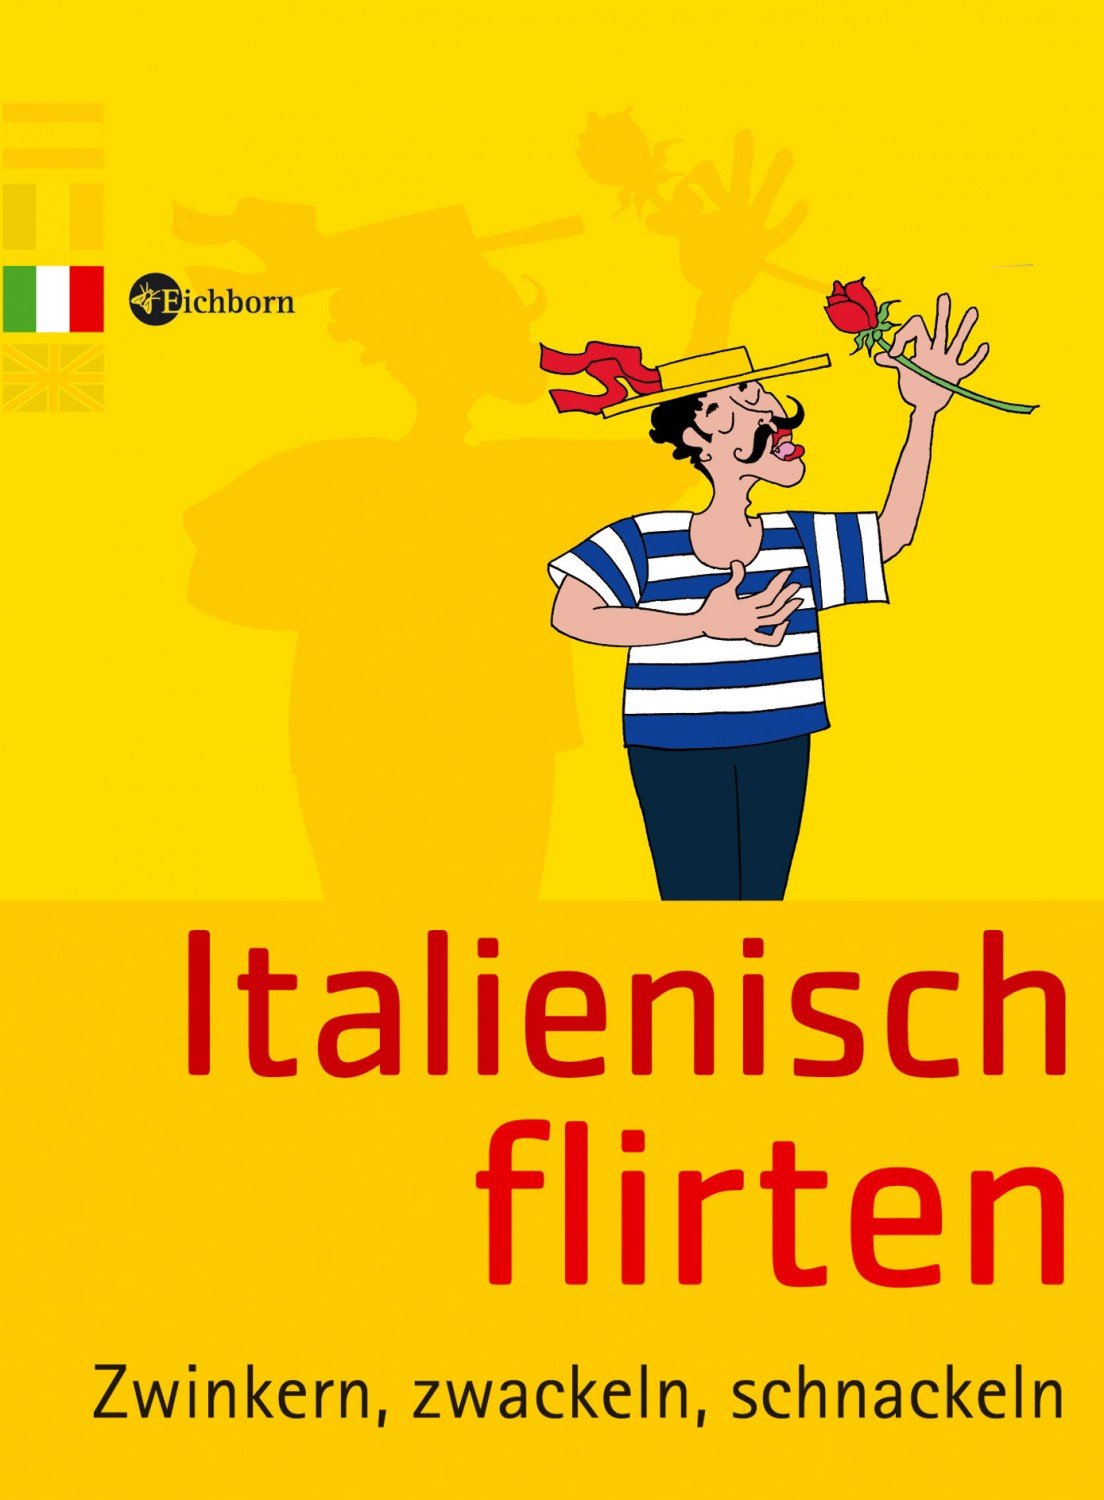 flirten - Italienisch Übersetzung - Deutsch Beispiele | Reverso Context